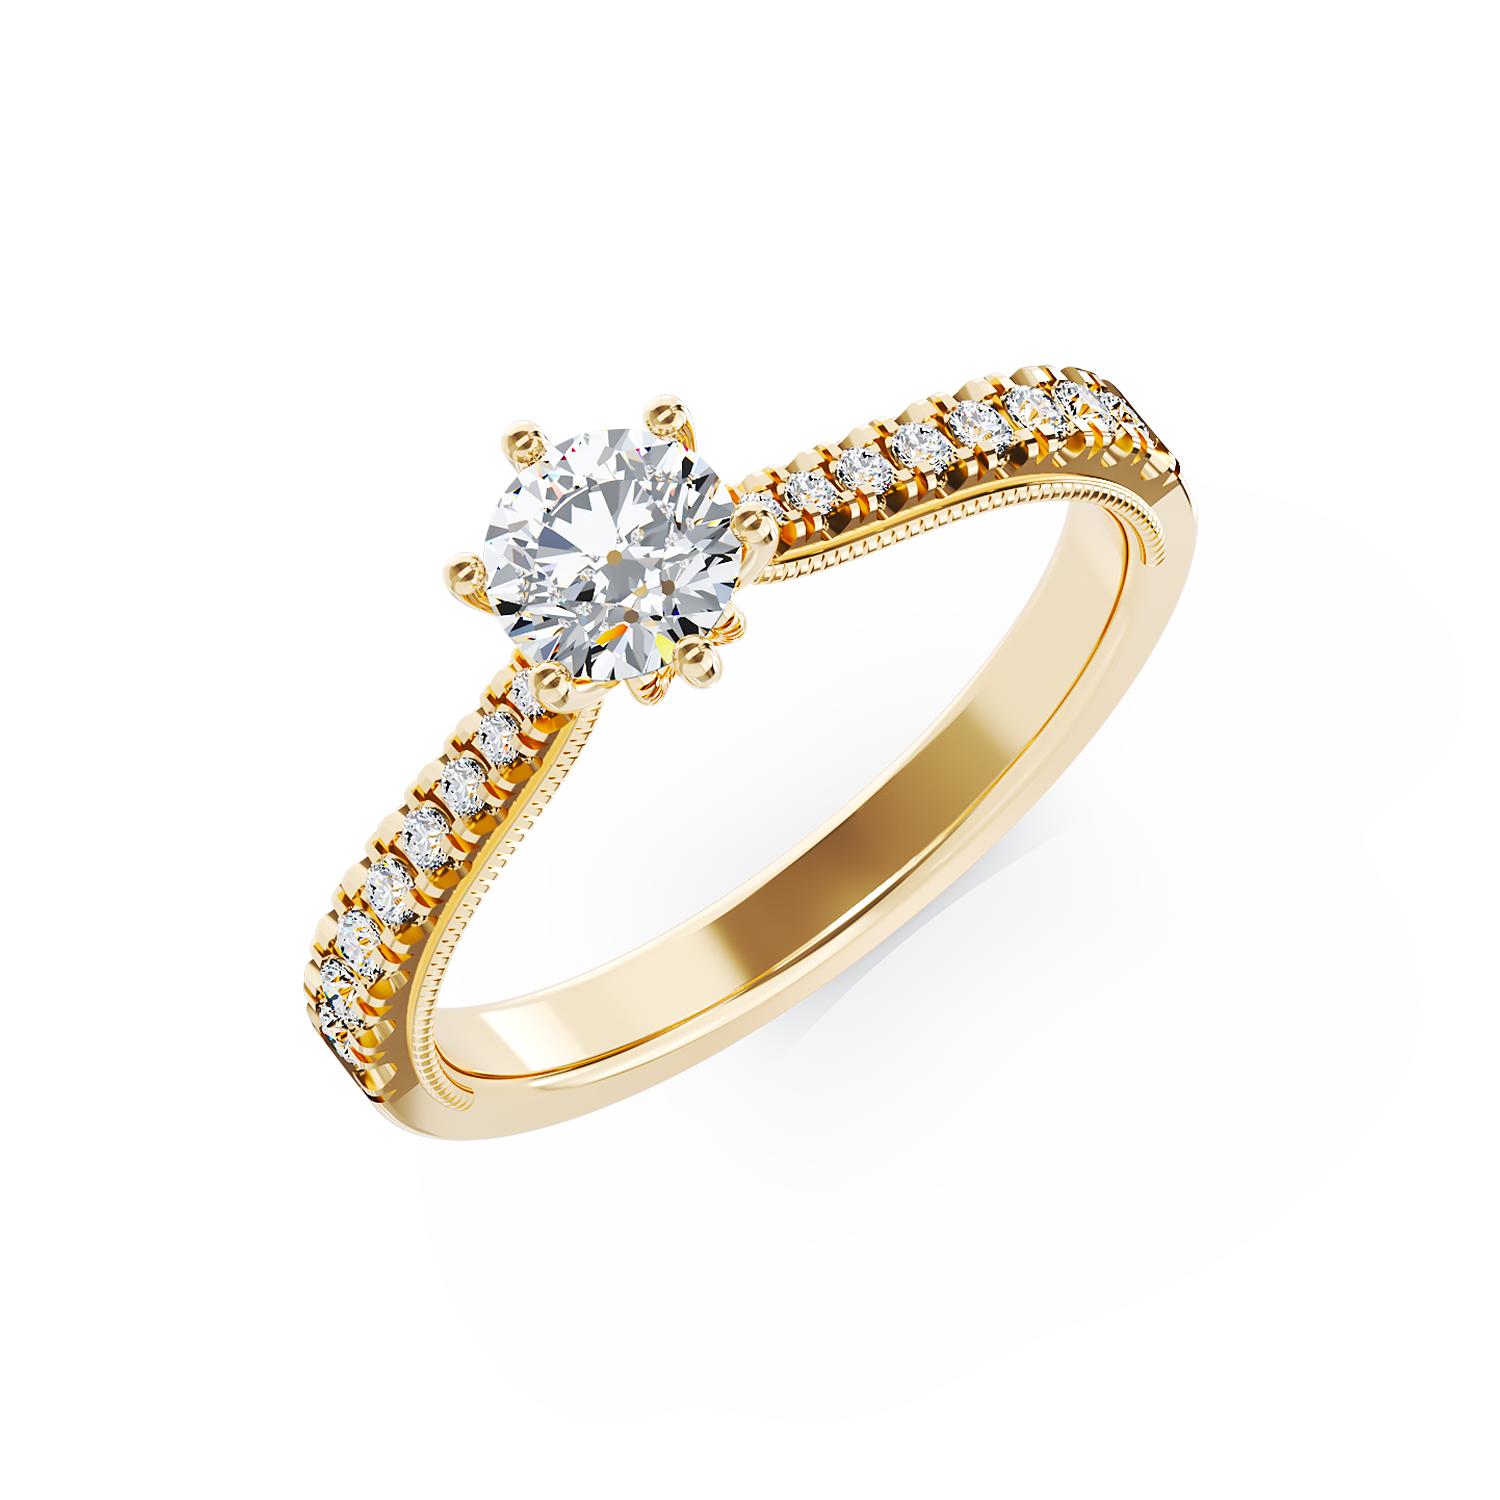 Eljegyzési gyűrű 18K-os sárga aranyból 0,16ct gyémánttal és 0,2ct gyémántokkal. Gramm: 2,5